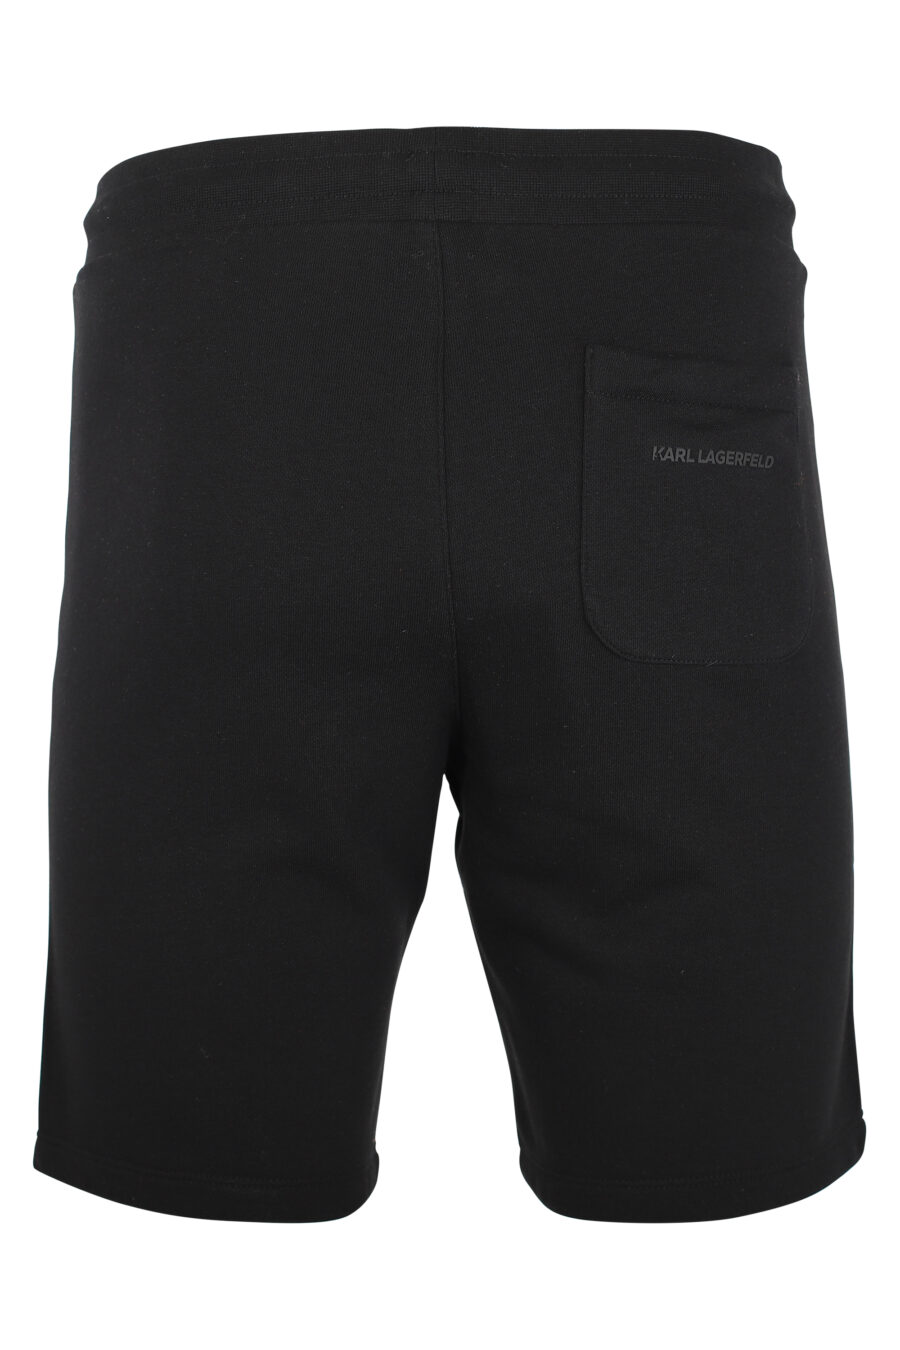 Pantalón de chándal negro corto con minilogo "karl" en silueta blanco - IMG 9508